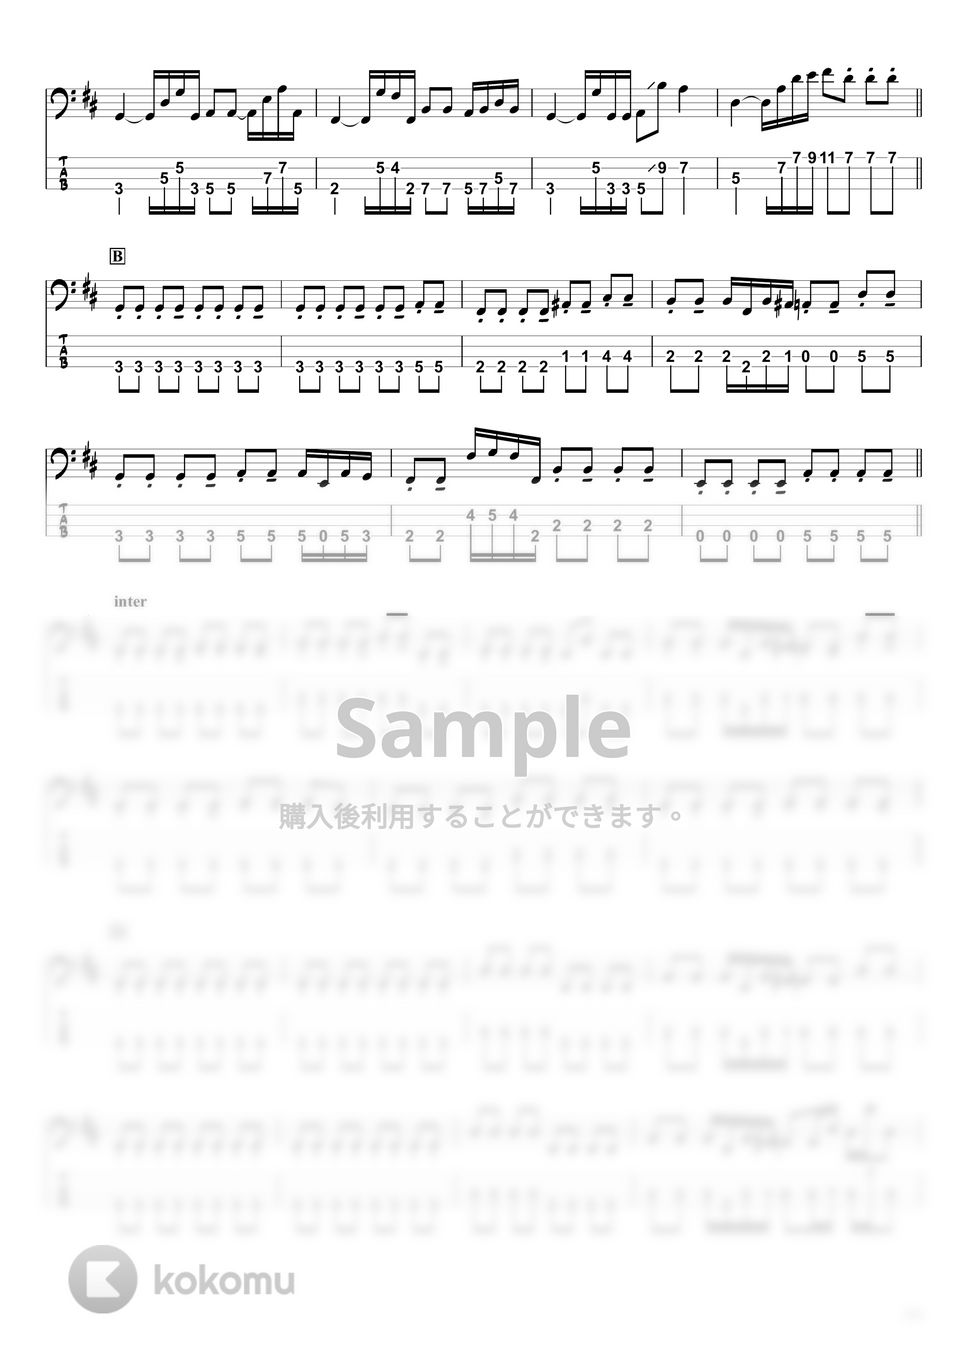 YOASOBI - アンコール (ベースTAB譜 / ☆4弦ベース対応) by swbass